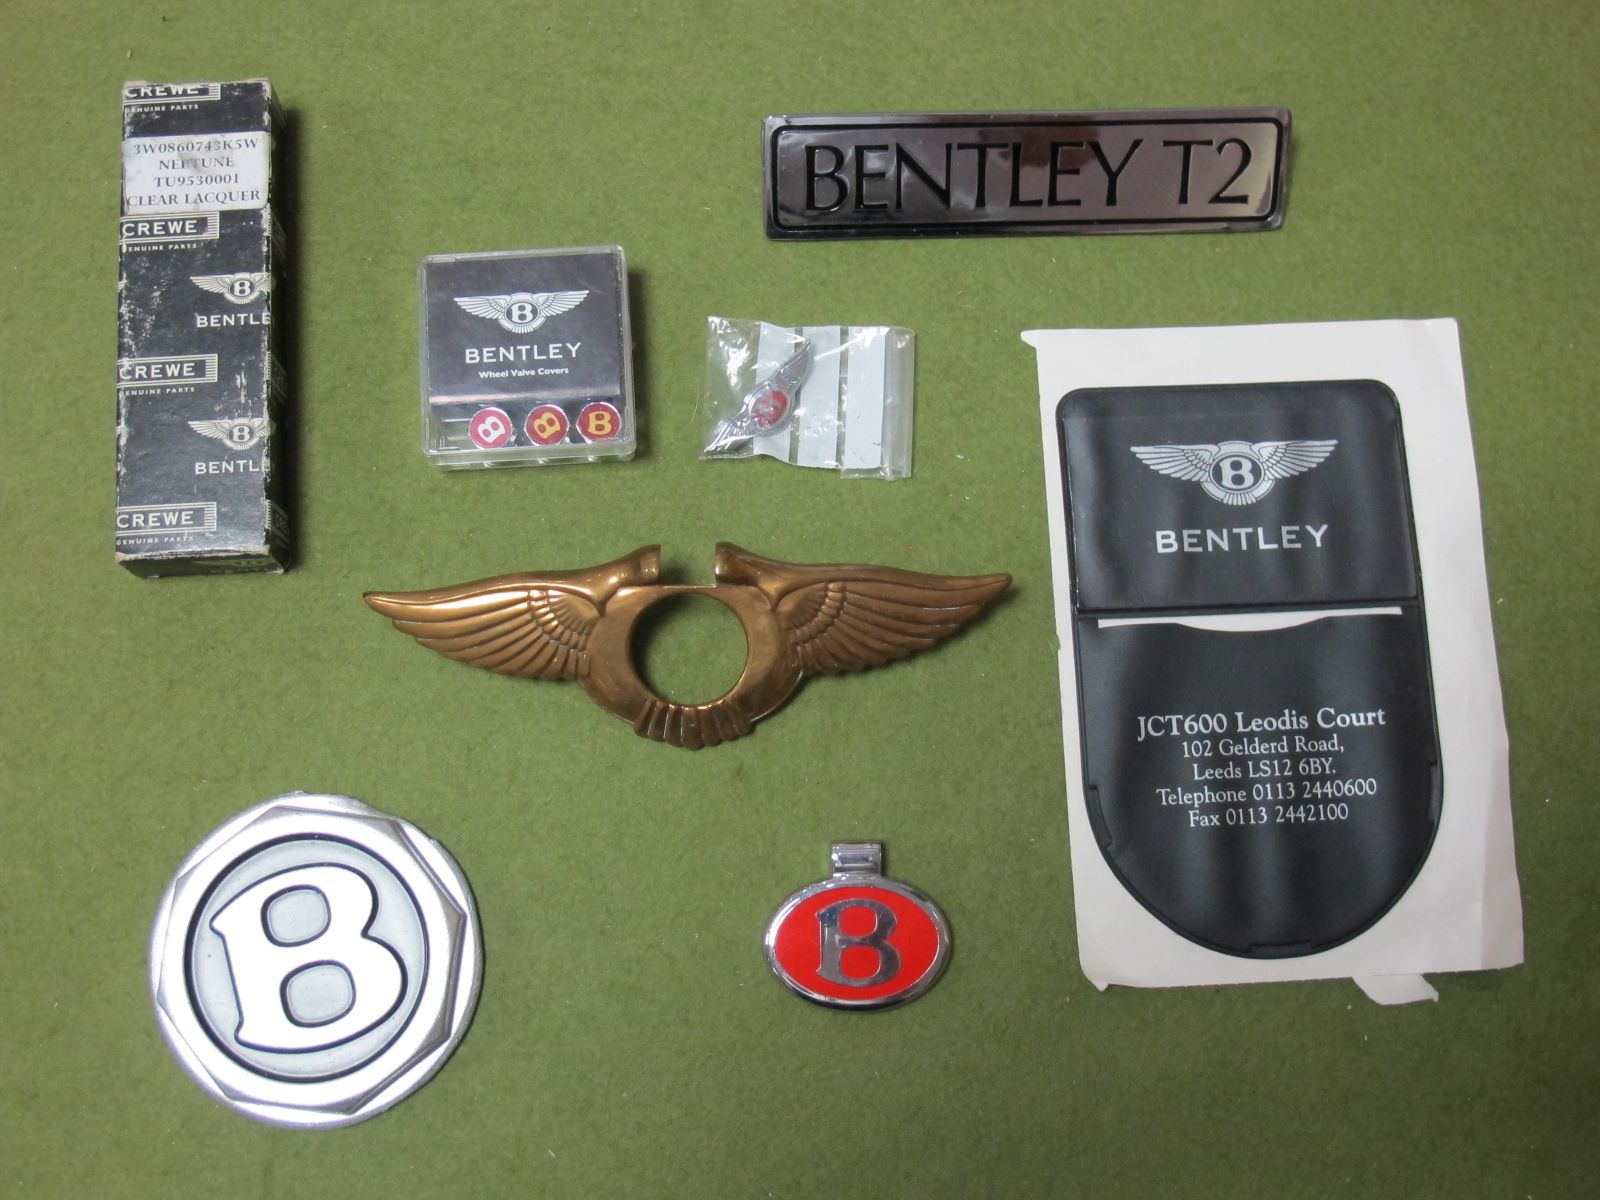 Bentley Boot Lock Cover Badge Red, Bentley T2 Boot Badge, Bentley B Wheel Hub Centre Badge (